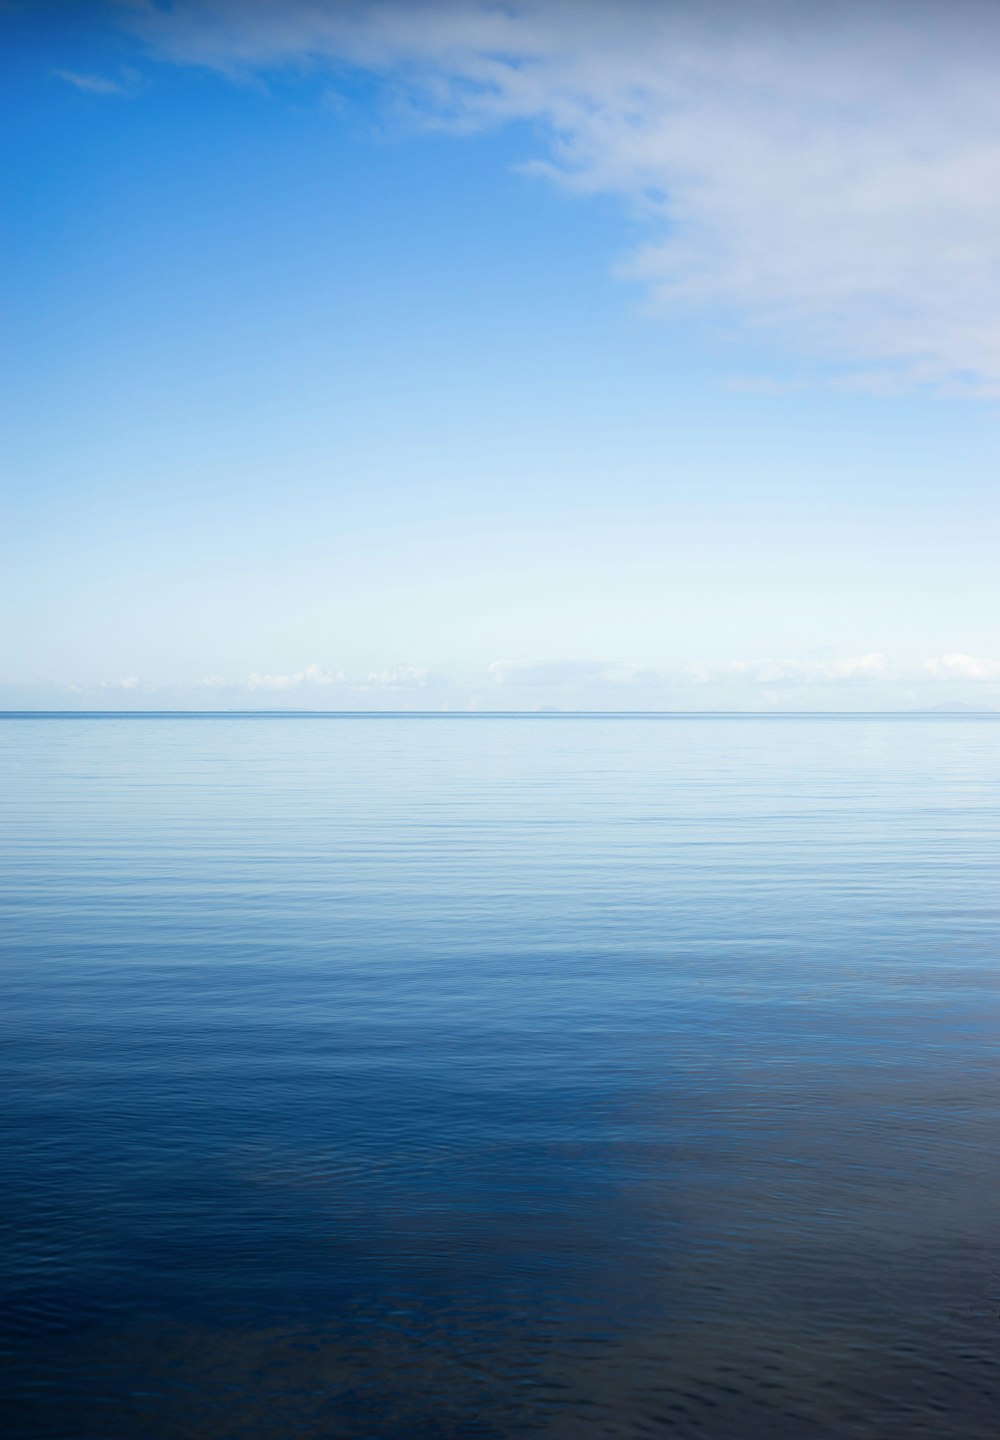 Hình ảnh đại dương bầu trời: Tận hưởng cảm giác dưới đại dương miễn phí chỉ bằng hình ảnh đại dương bầu trời. Từ màu xanh dịu nhẹ đến màu tím lay động tinh thần bạn vào cuộc phiêu lưu xa xôi. Không chỉ đẹp mắt mà còn phong phú với những giọt nước phun lên mặt trời chiếu sáng.